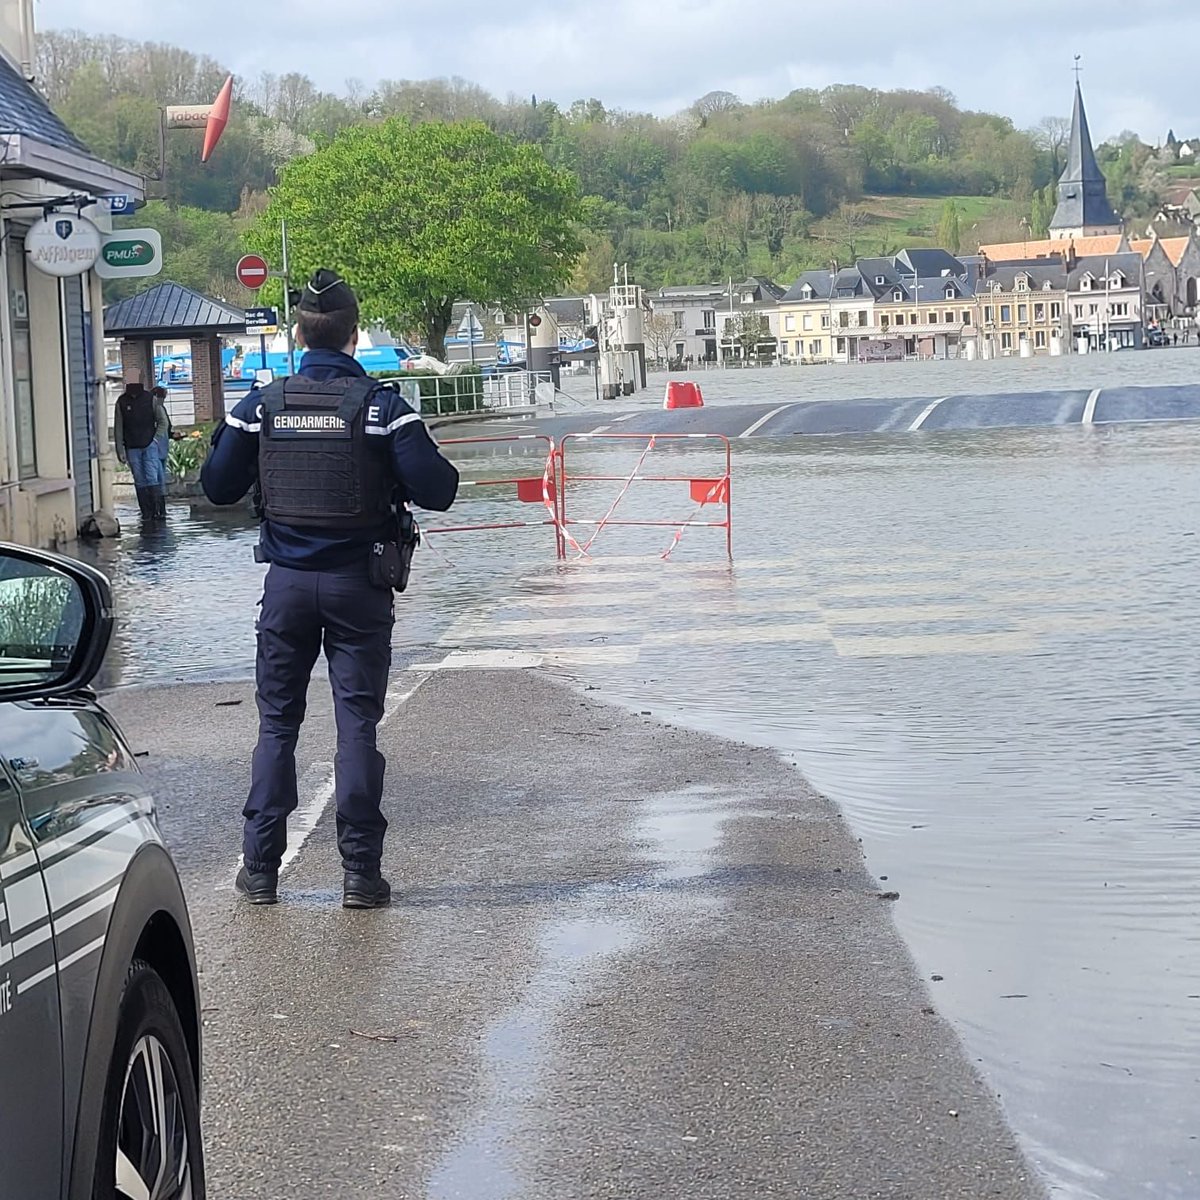 Les #gendarmesdeseinemaritime s'engagent au quotidien pour vous protéger, être à vos côtés.
Pendant cet épisode de crues, les militaires de la BTA de Duclair étaient présents pour s'enquérir de la viabilité des axes, anticiper la protection des personnes et des biens.
#AVosCôtés